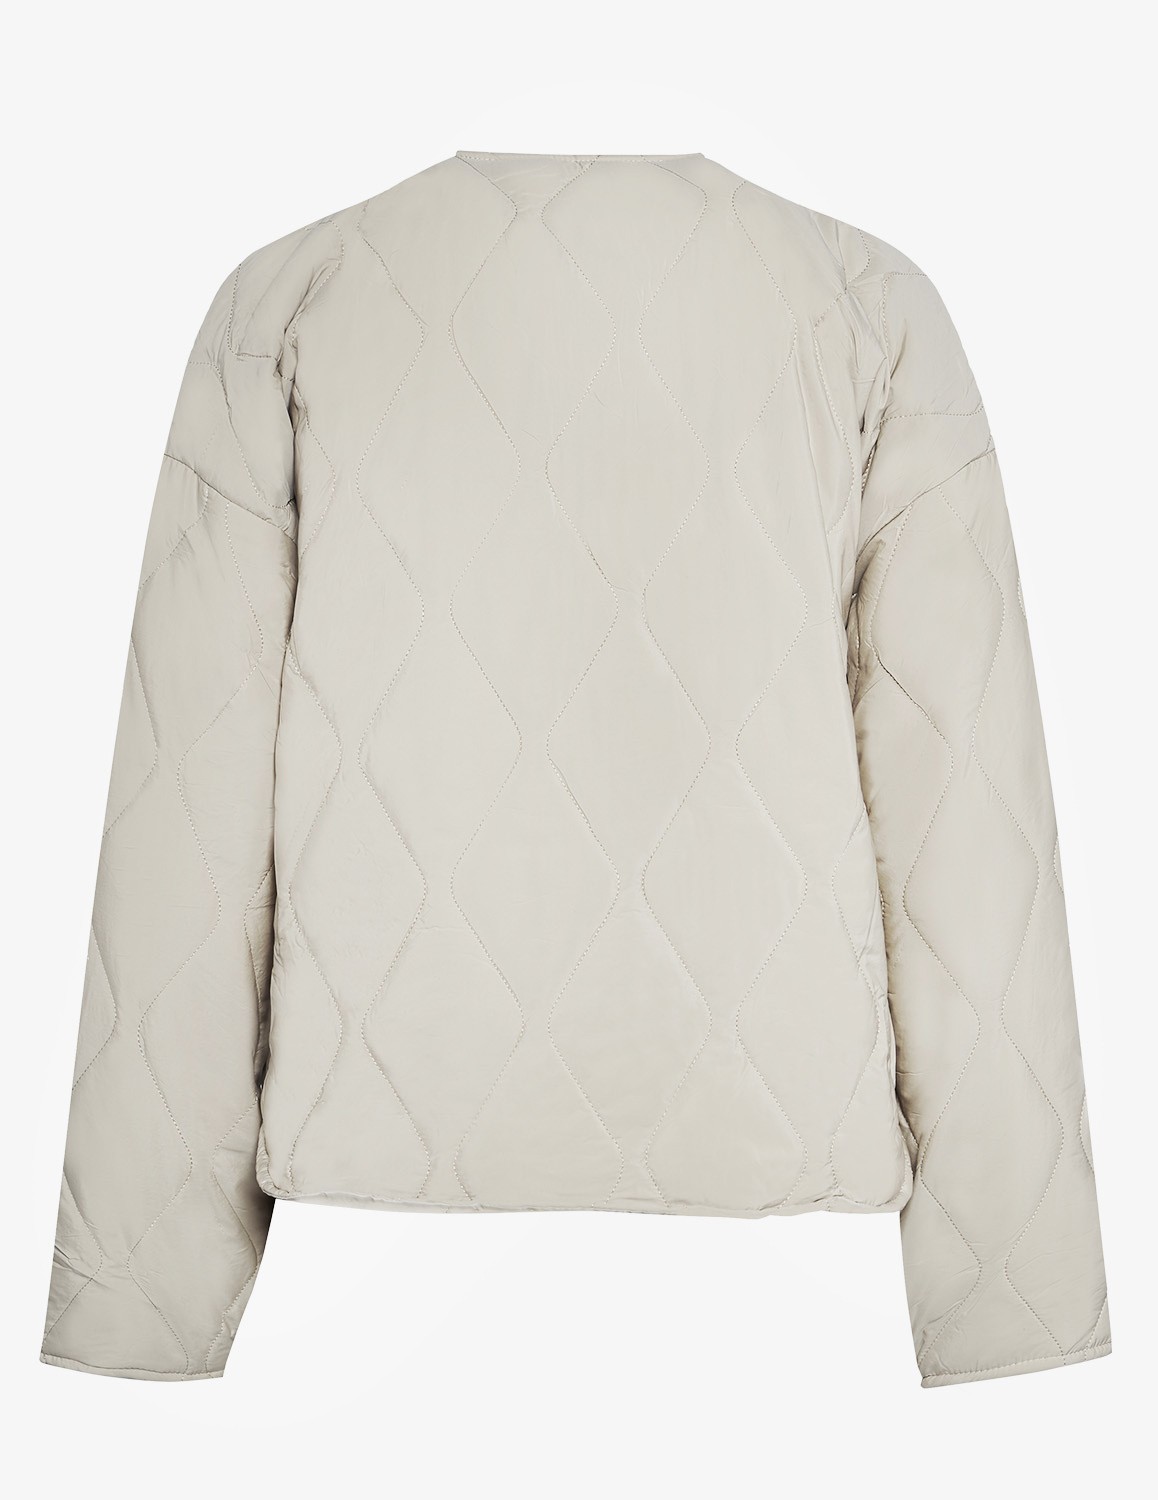 TERRA Jacket Creme White